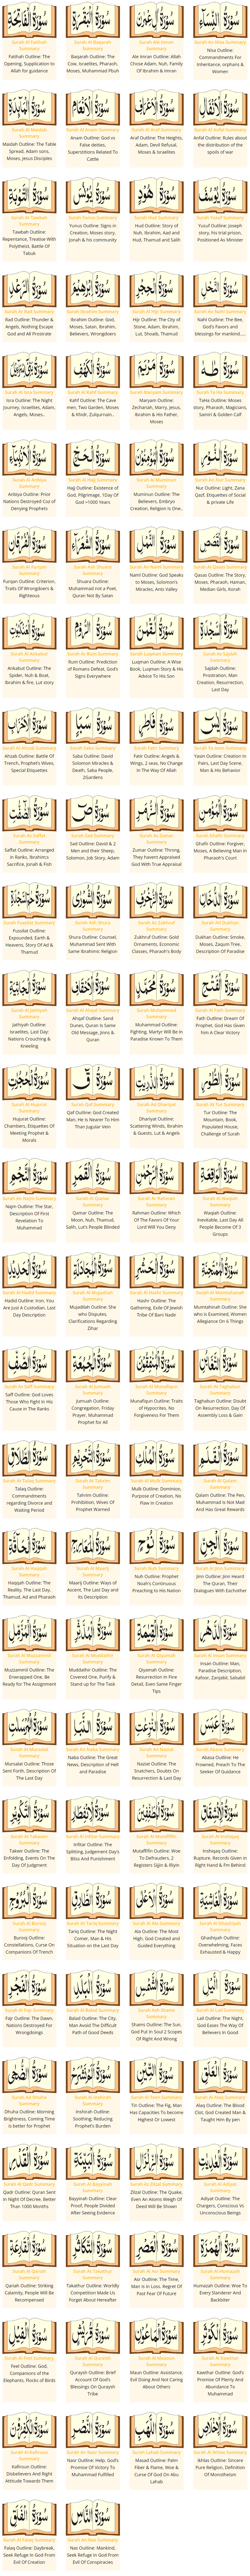 Quran Summaries.png